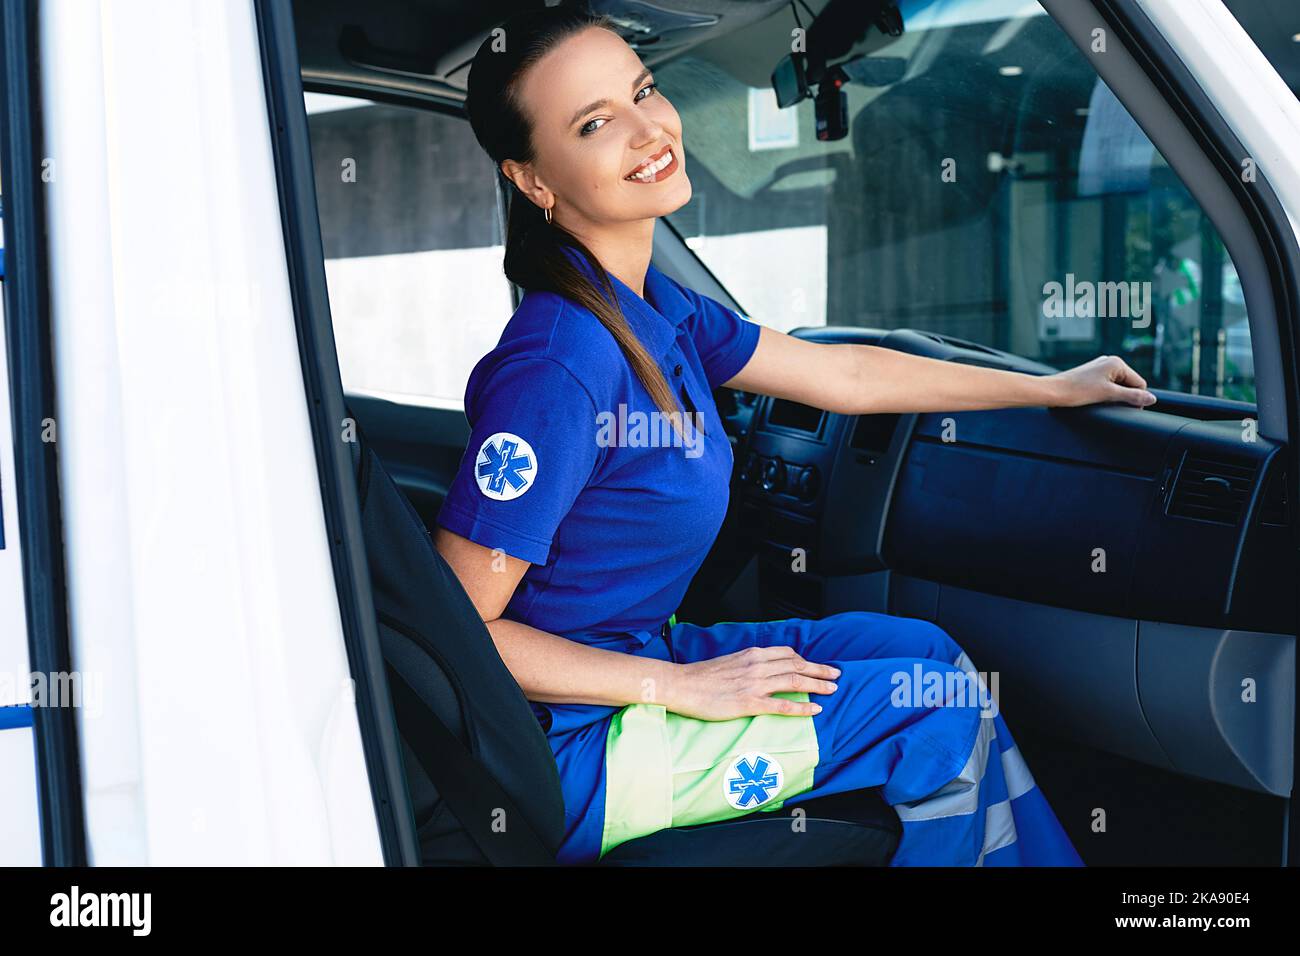 Travailleur des services médicaux d'urgence. Portrait d'une femme ambulancier assise dans une ambulance Banque D'Images